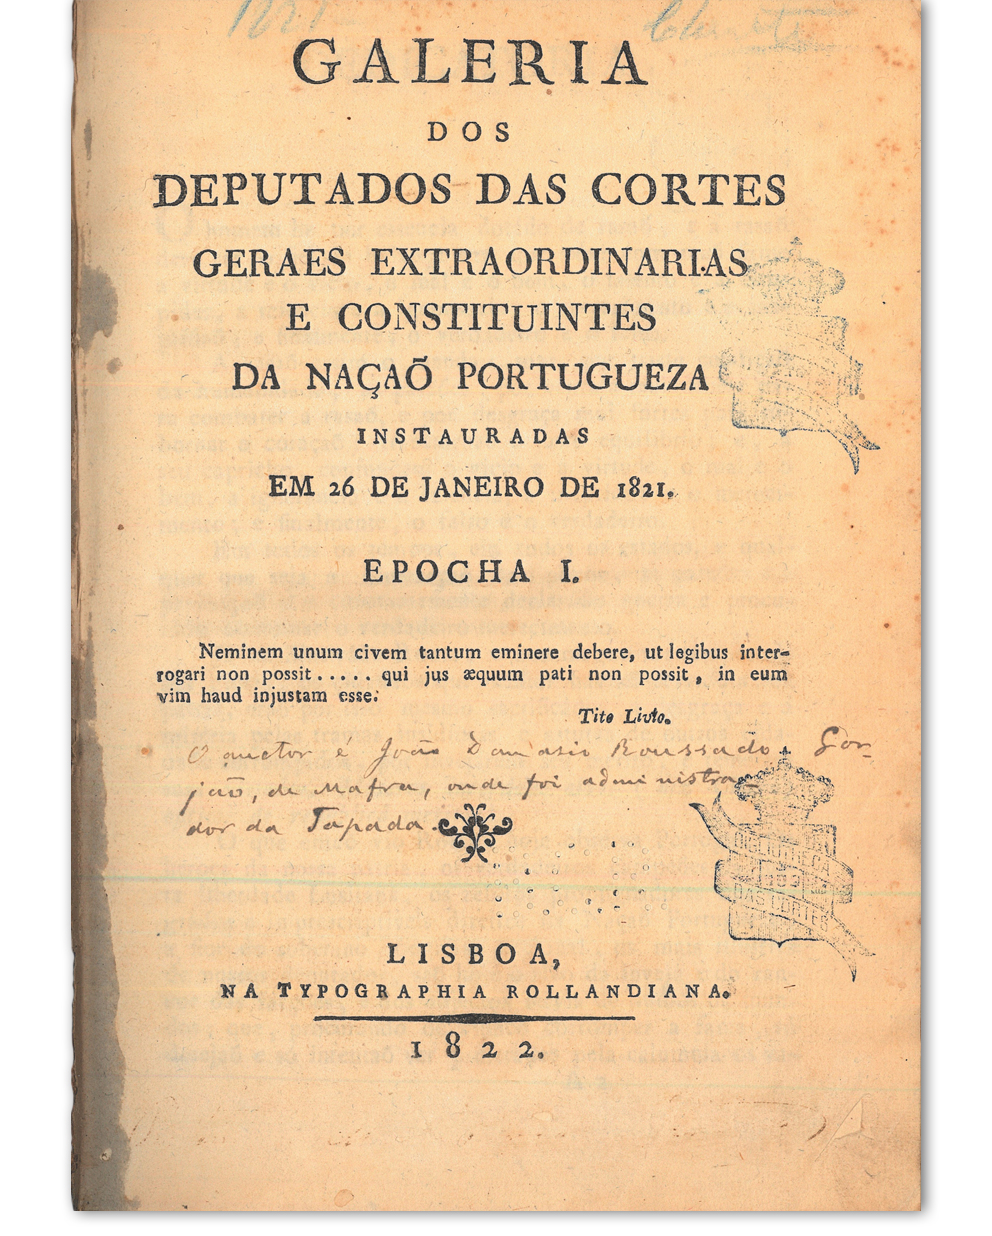 Galeria dos deputados das Cortes geraes extraordinarias e constituintes da Nação Portugueza instauradas em 26 de Janeiro de 1821. Lisboa : na Typographia Rollandiana, 1822. Cota: 10/1822